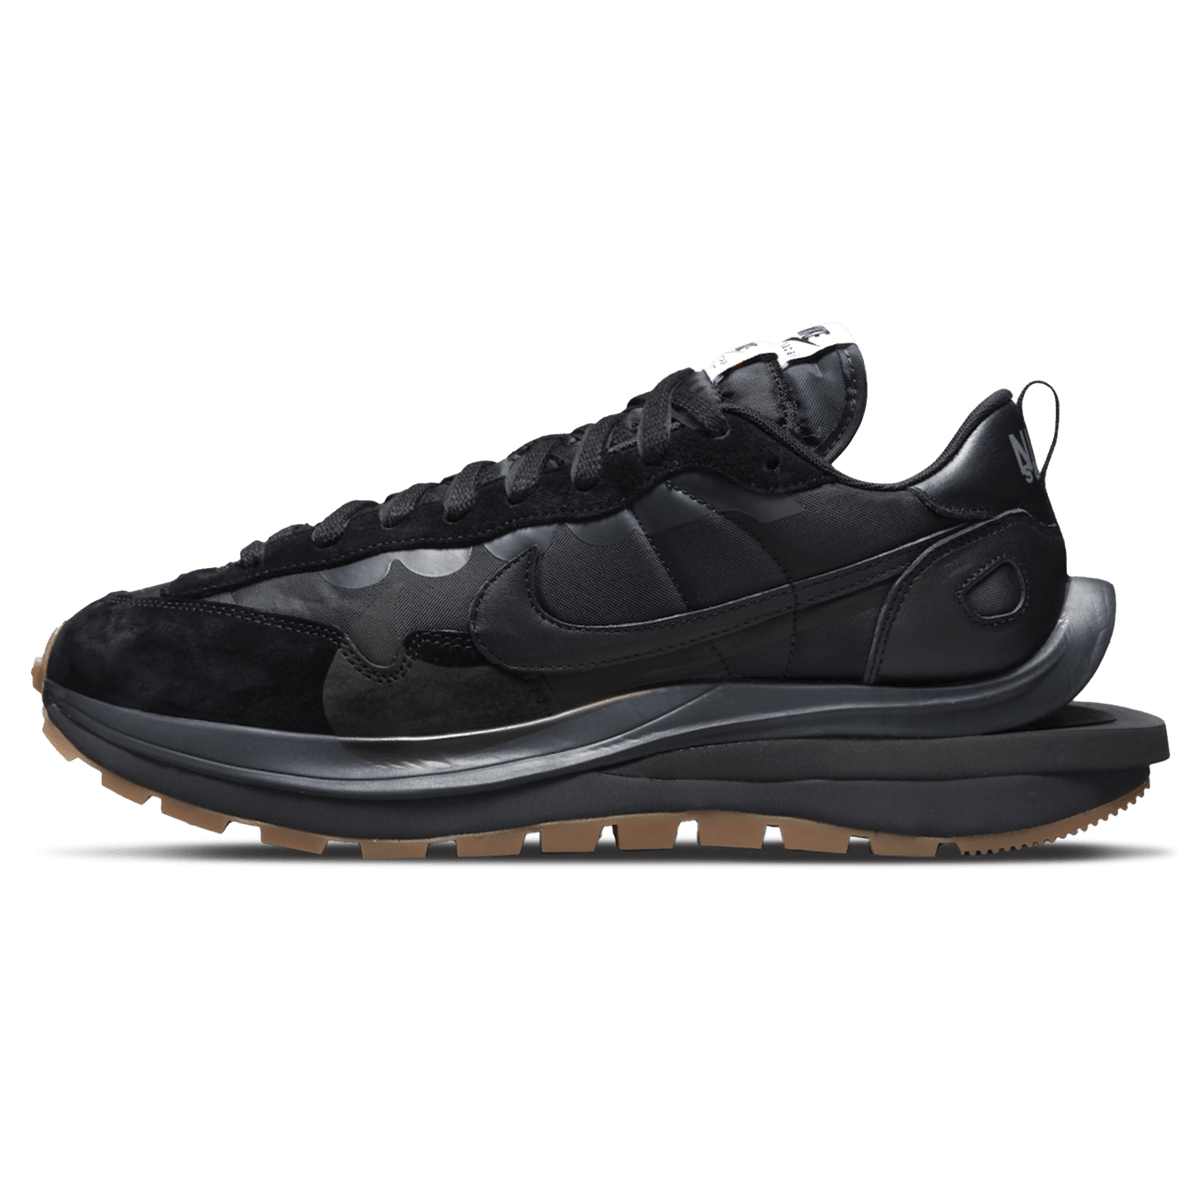 Sacai australia x Nike VaporWaffle 'Black Gum' - UrlfreezeShops